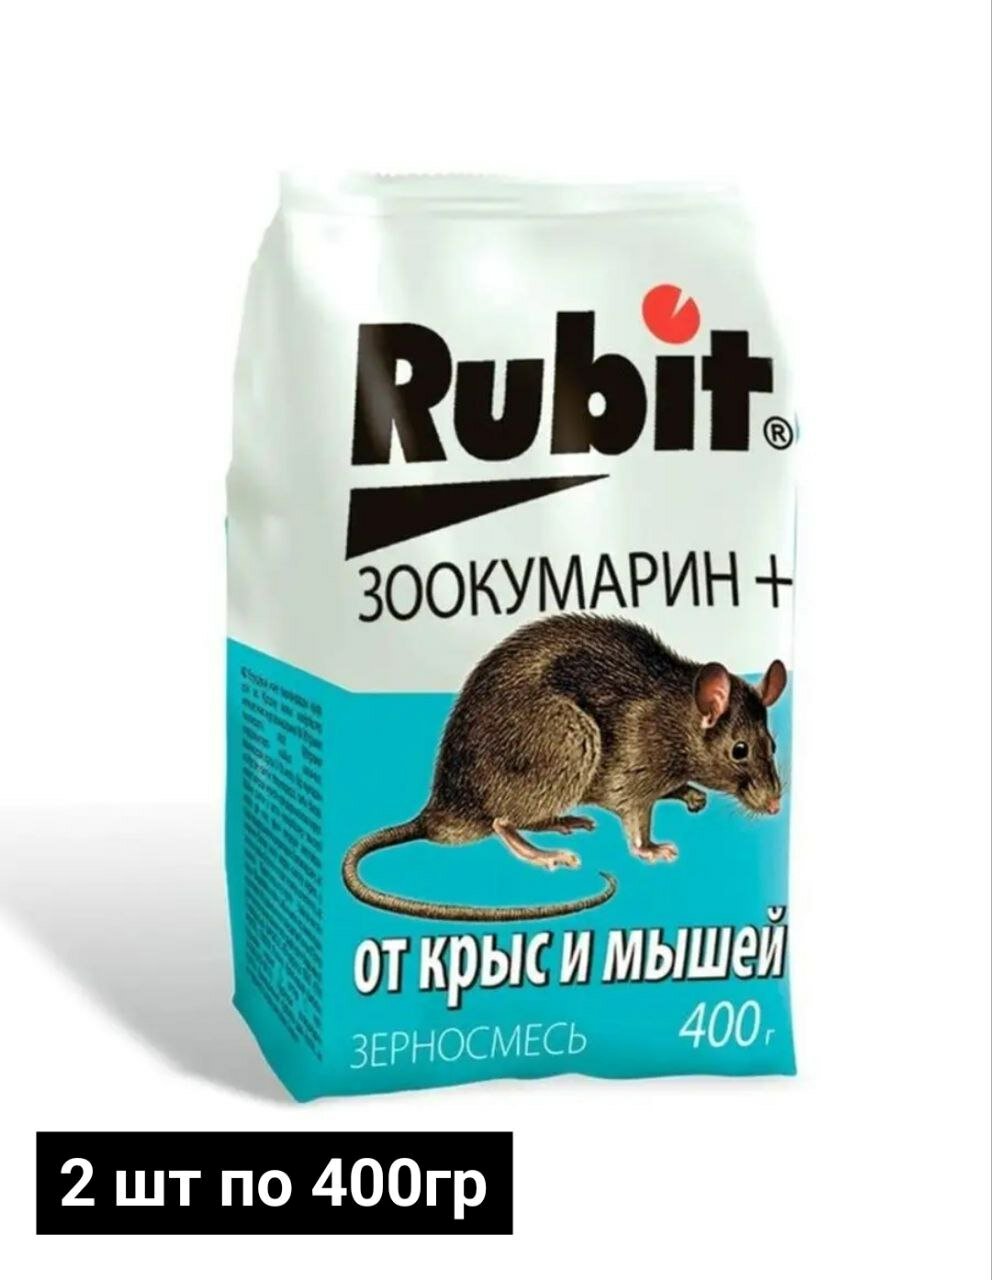 800г Рубит ЗООКУМАРИН+ 400г -2шт зерновая смесь для уничтожения крыс и мышей.